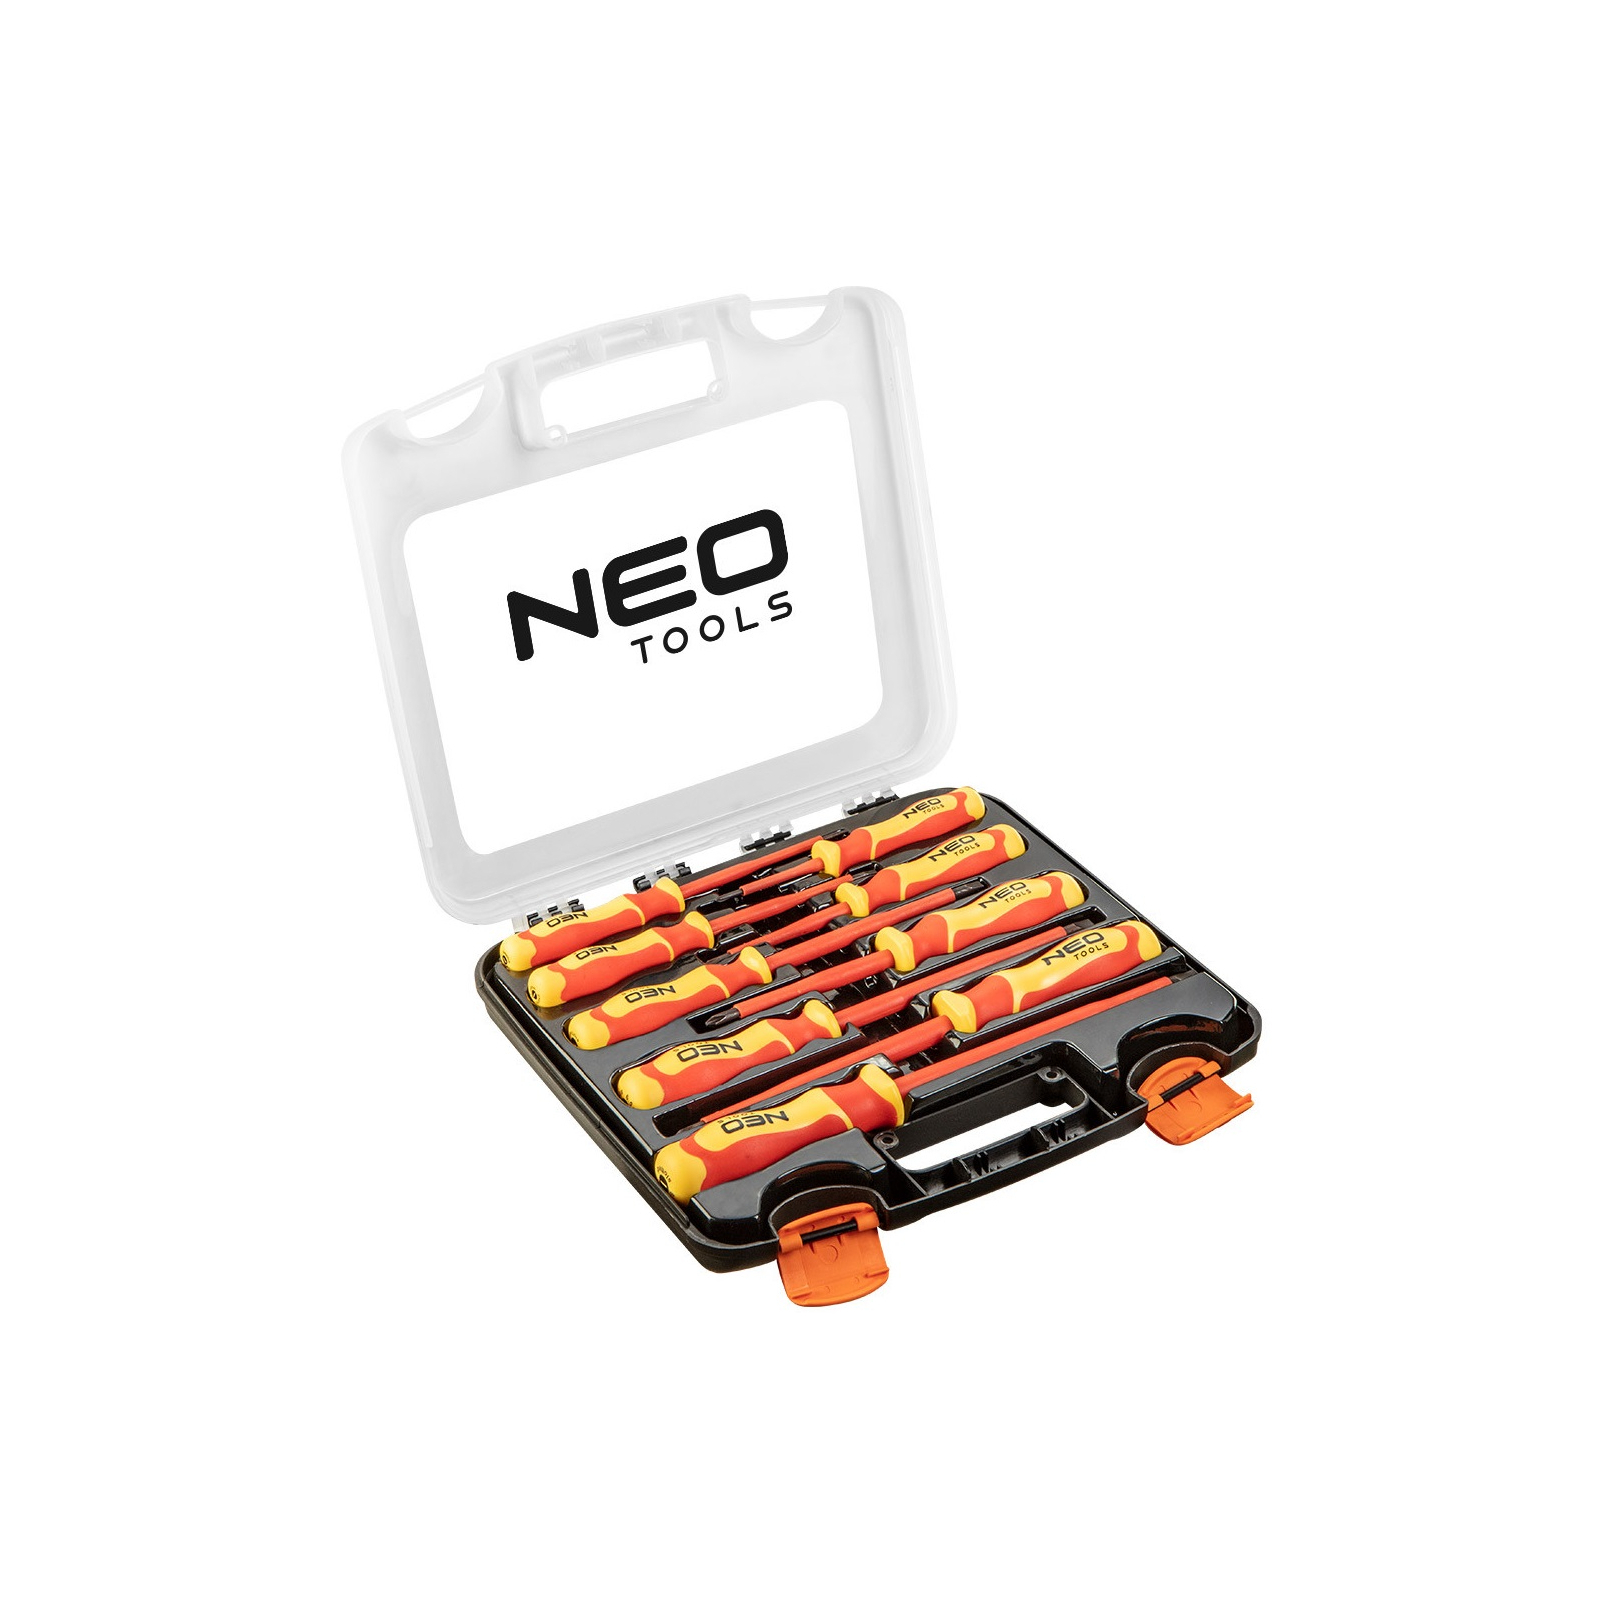 Набор отверток Neo Tools отверток для работы с електричеством до 1000 В, 9 шт. (04-142)